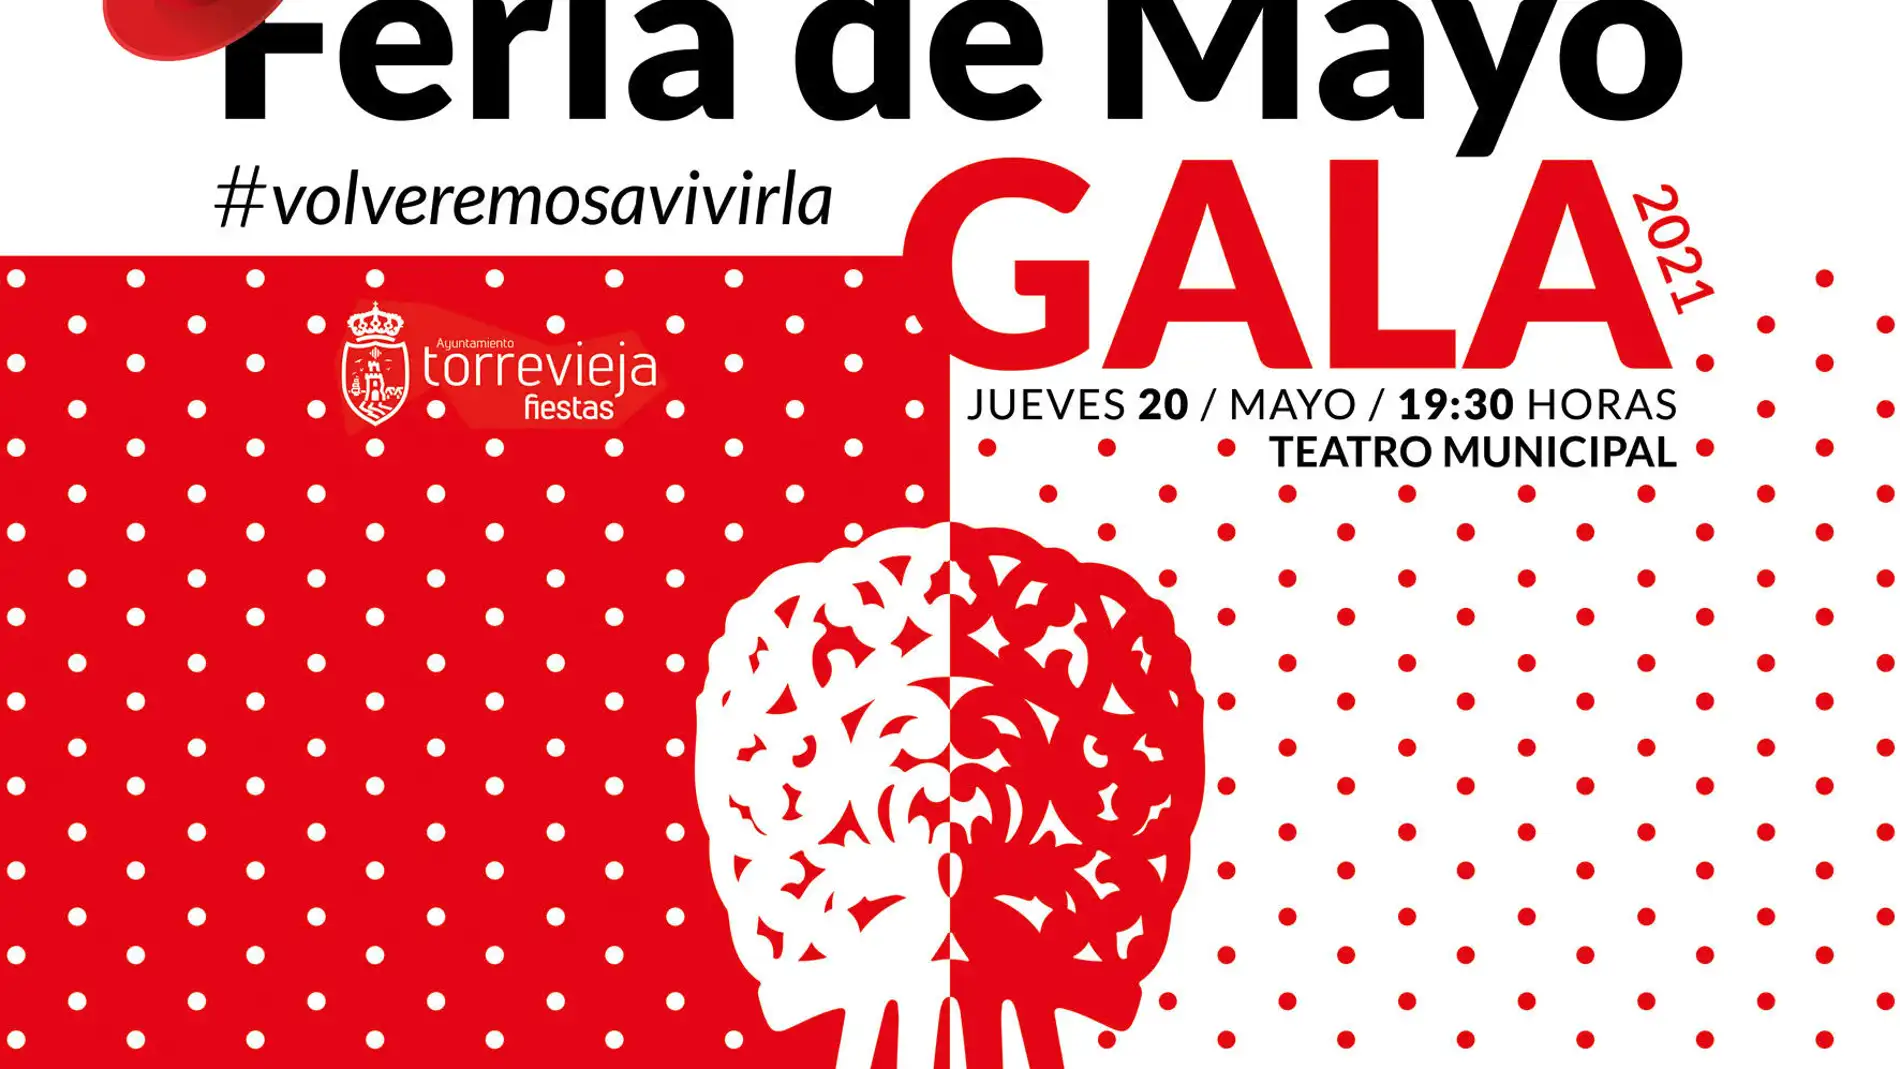 La gala tendrá lugar el 20 de mayo a las 19:30 horas, en el Teatro Municipal, con entrada gratuita hasta completar aforo 